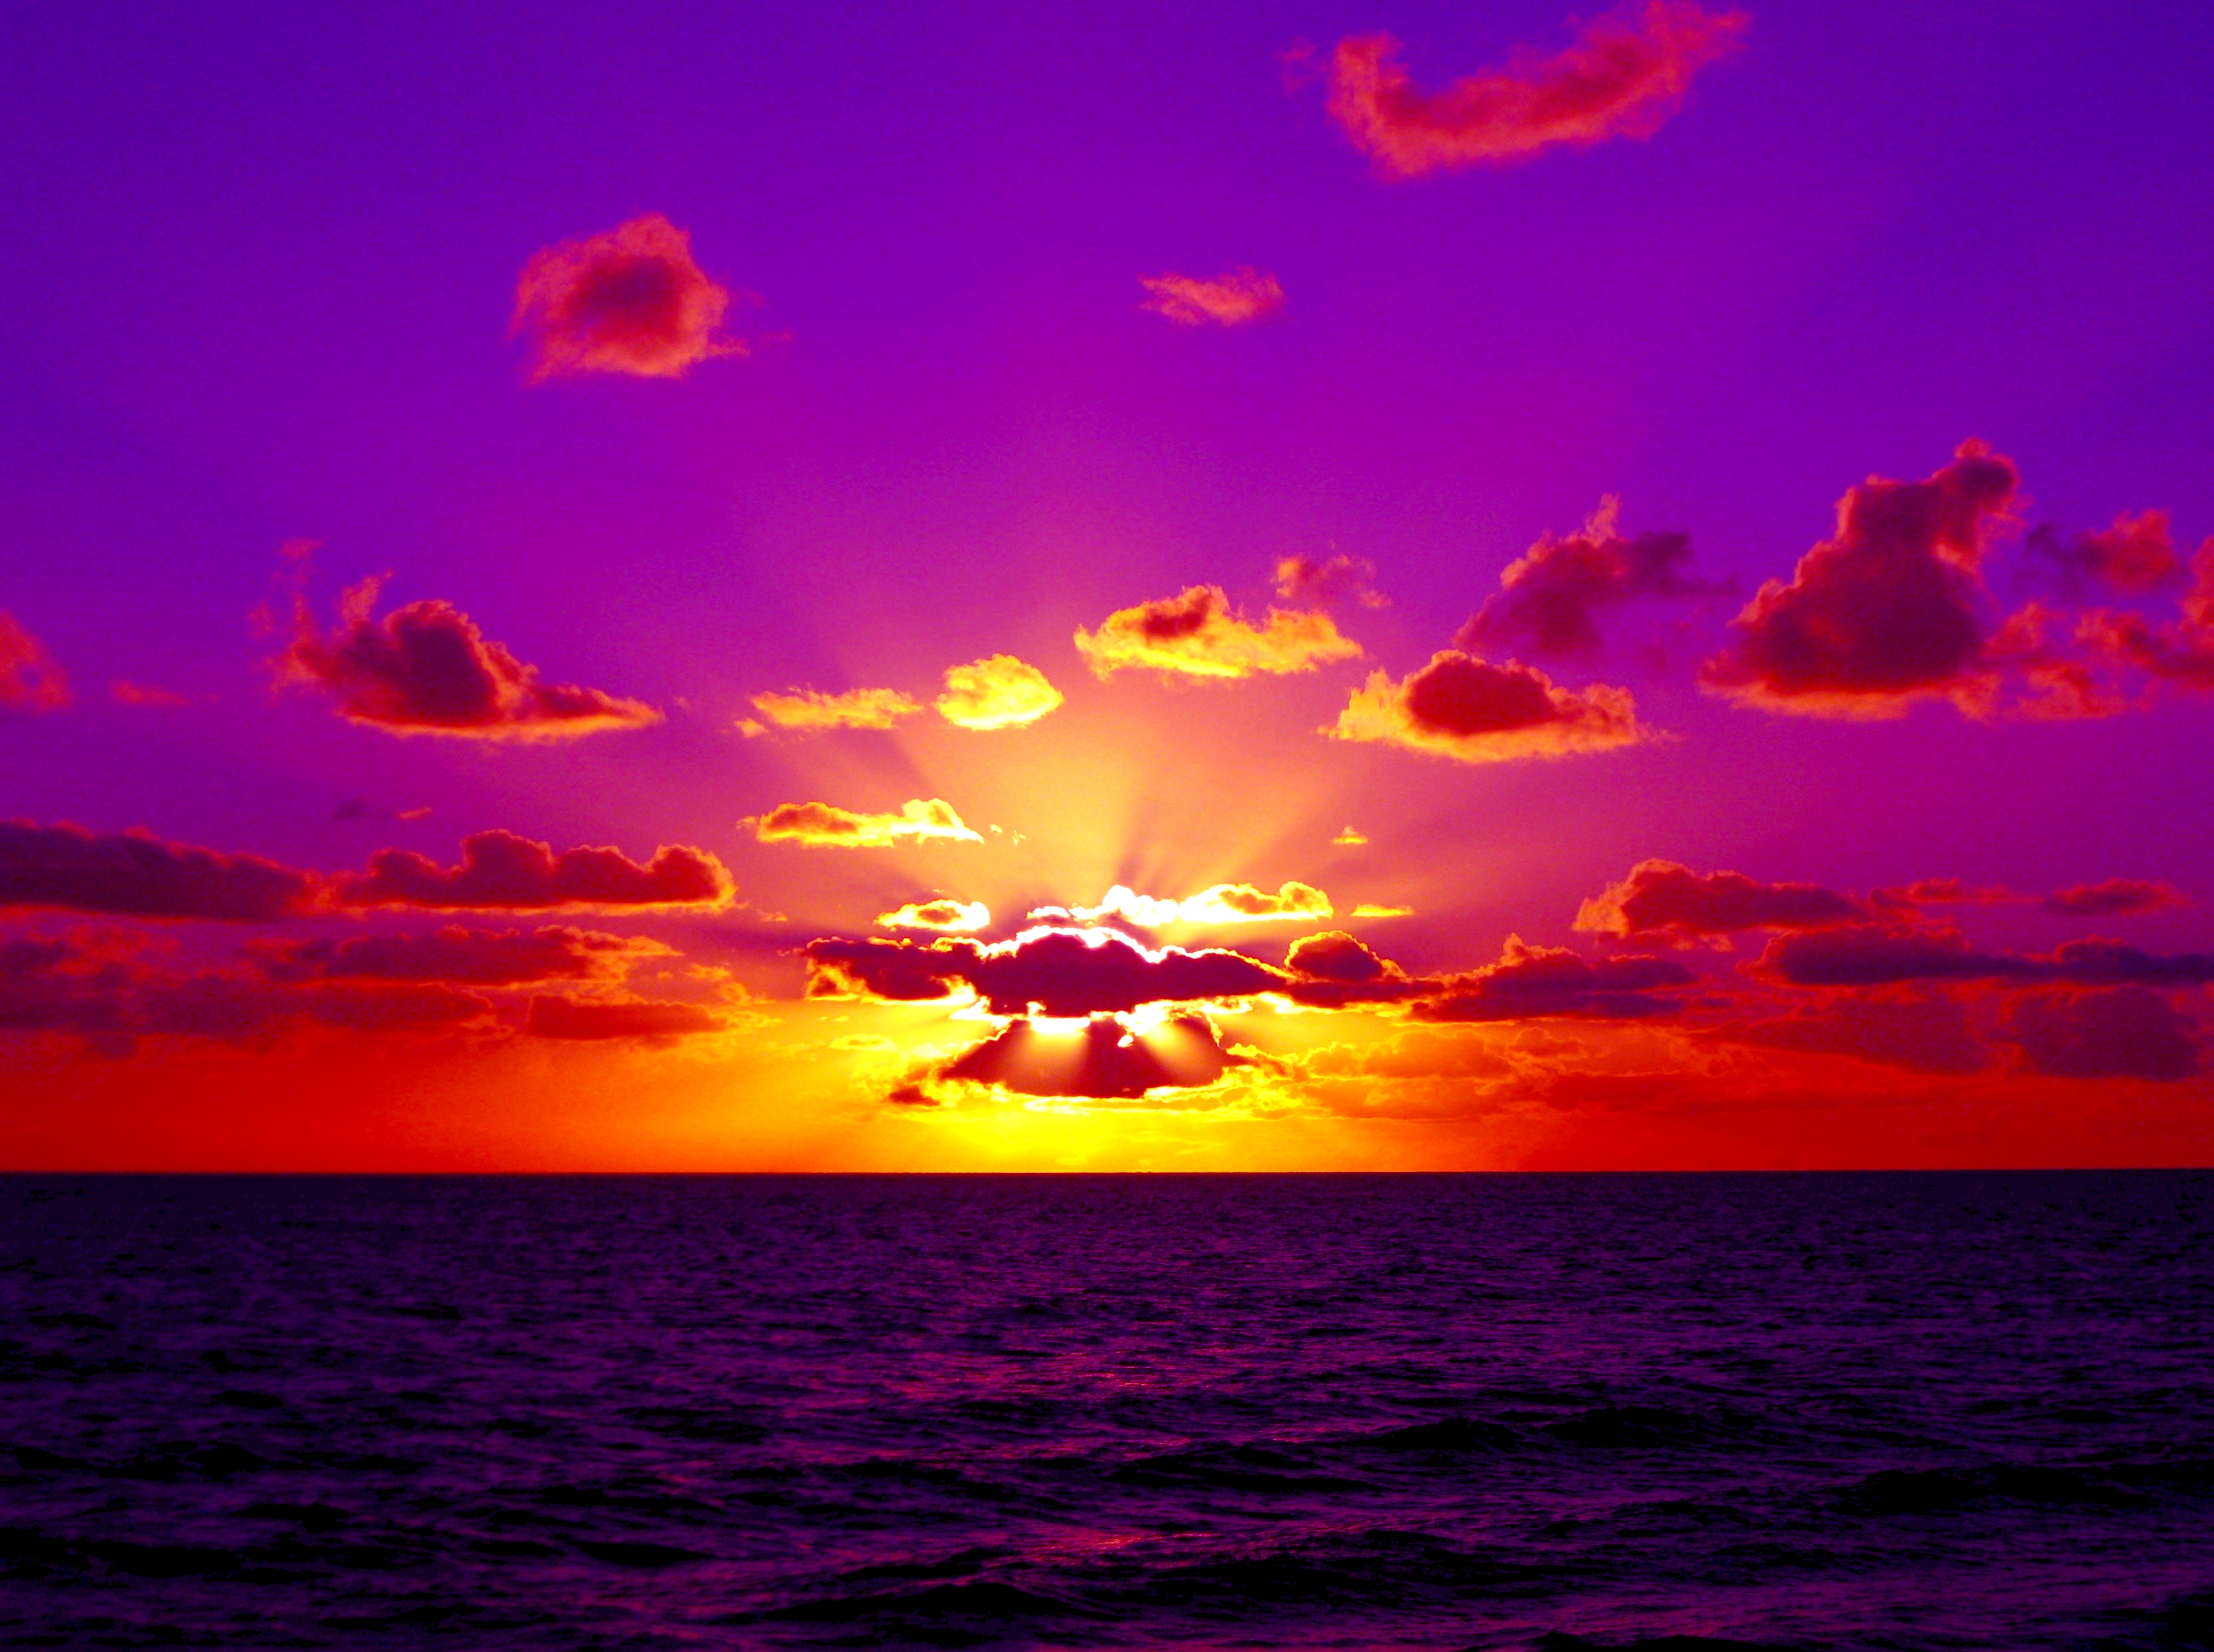 Sunset Images For Desktop images